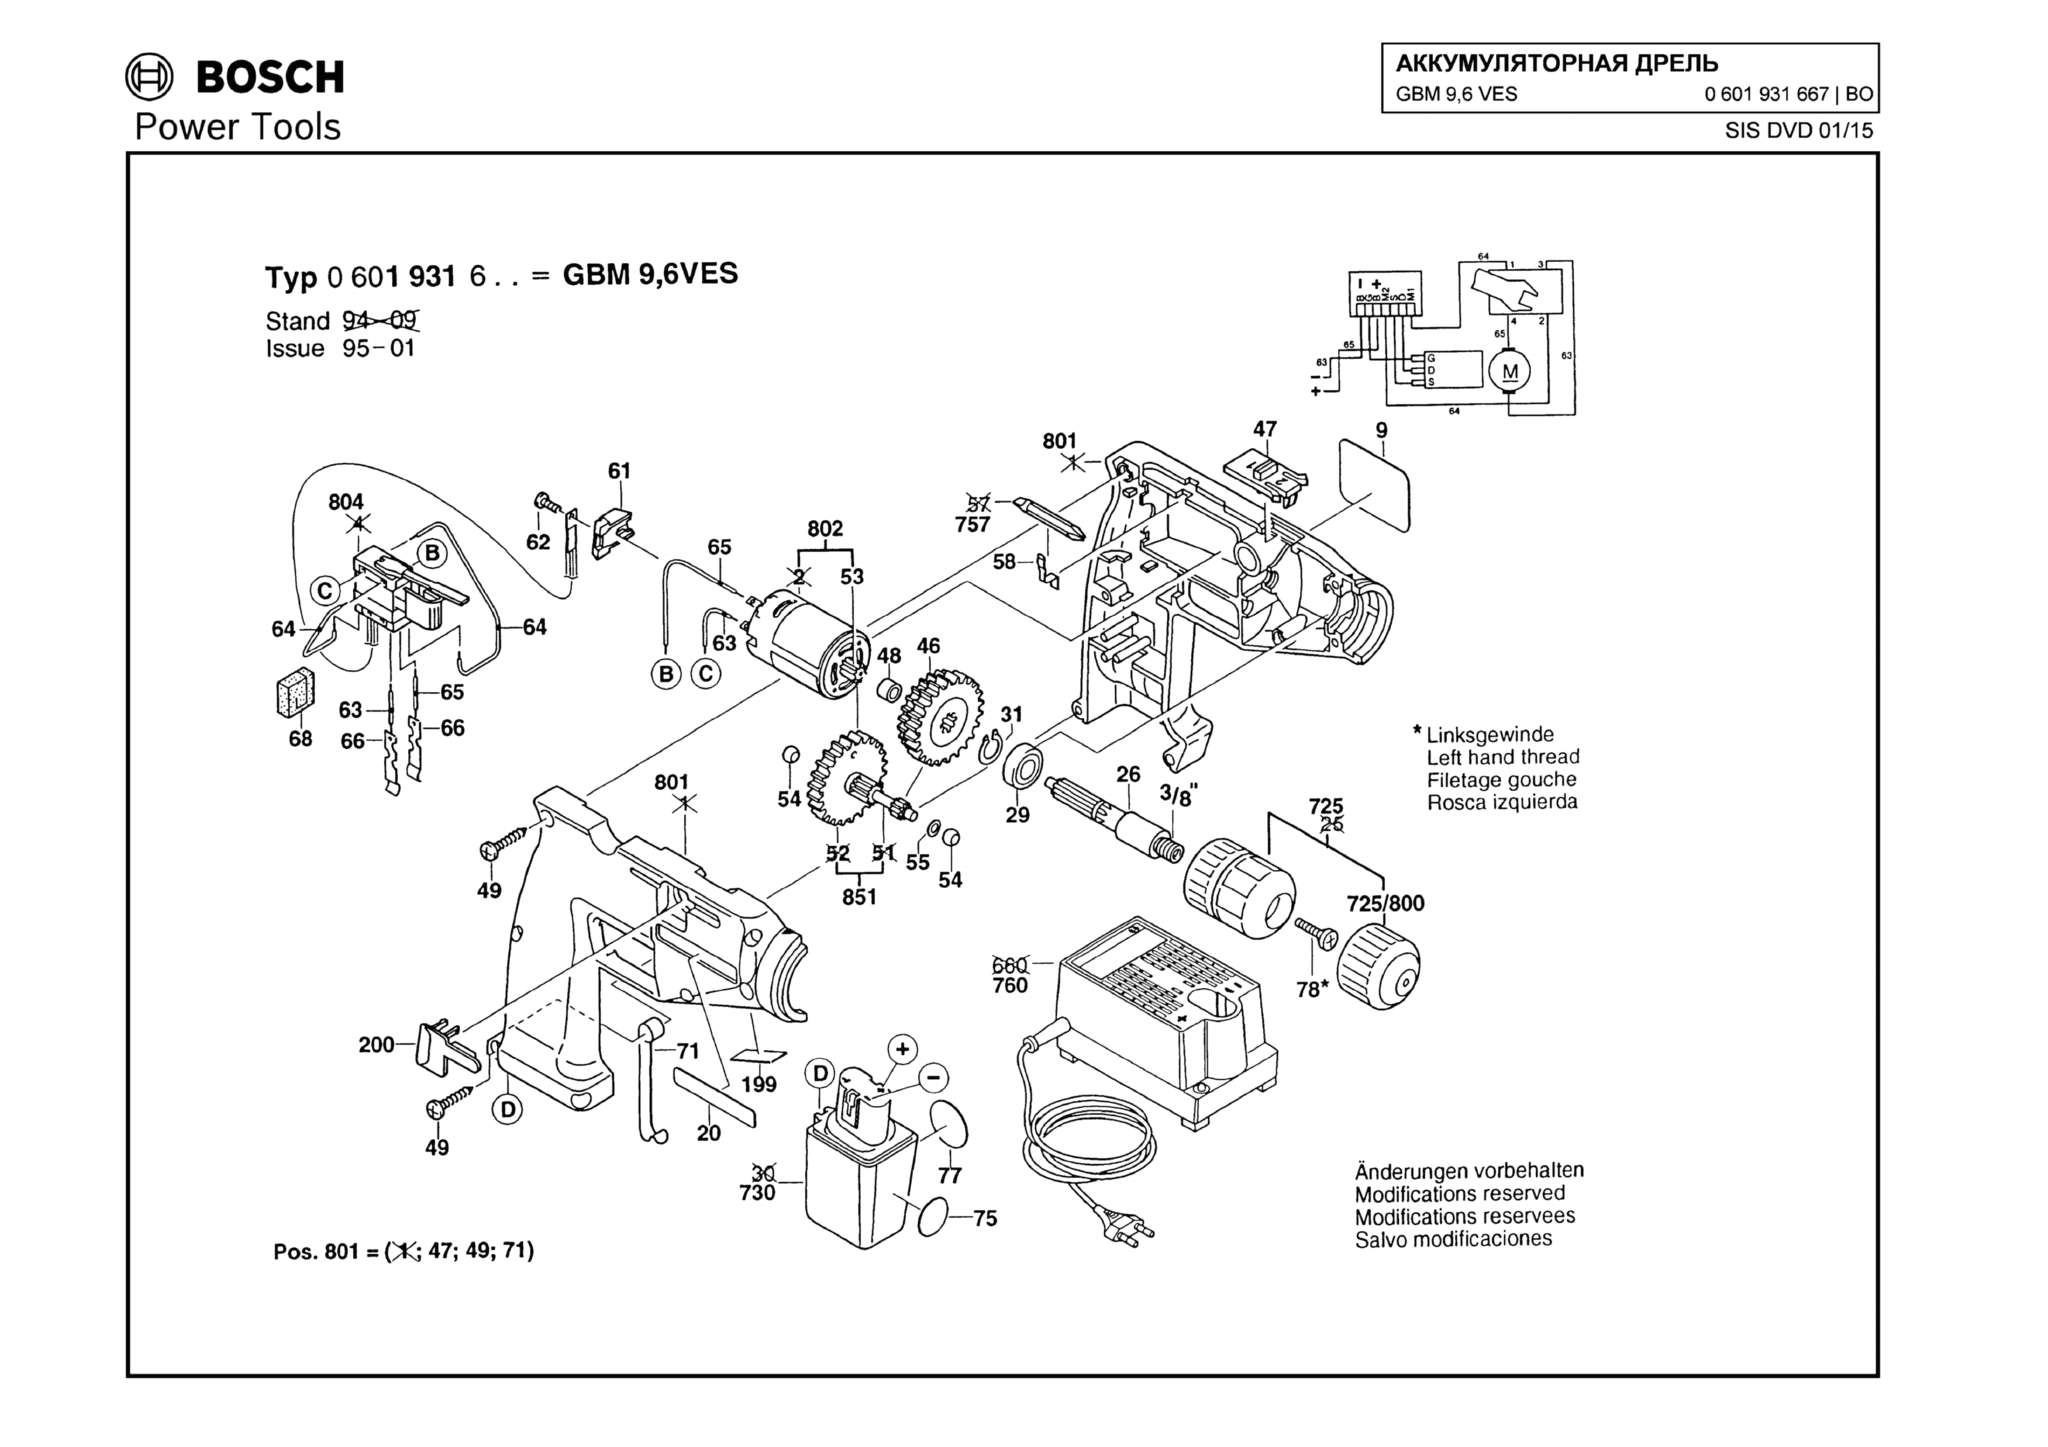 Запчасти, схема и деталировка Bosch GBM 9,6 VES (ТИП 0601931667)